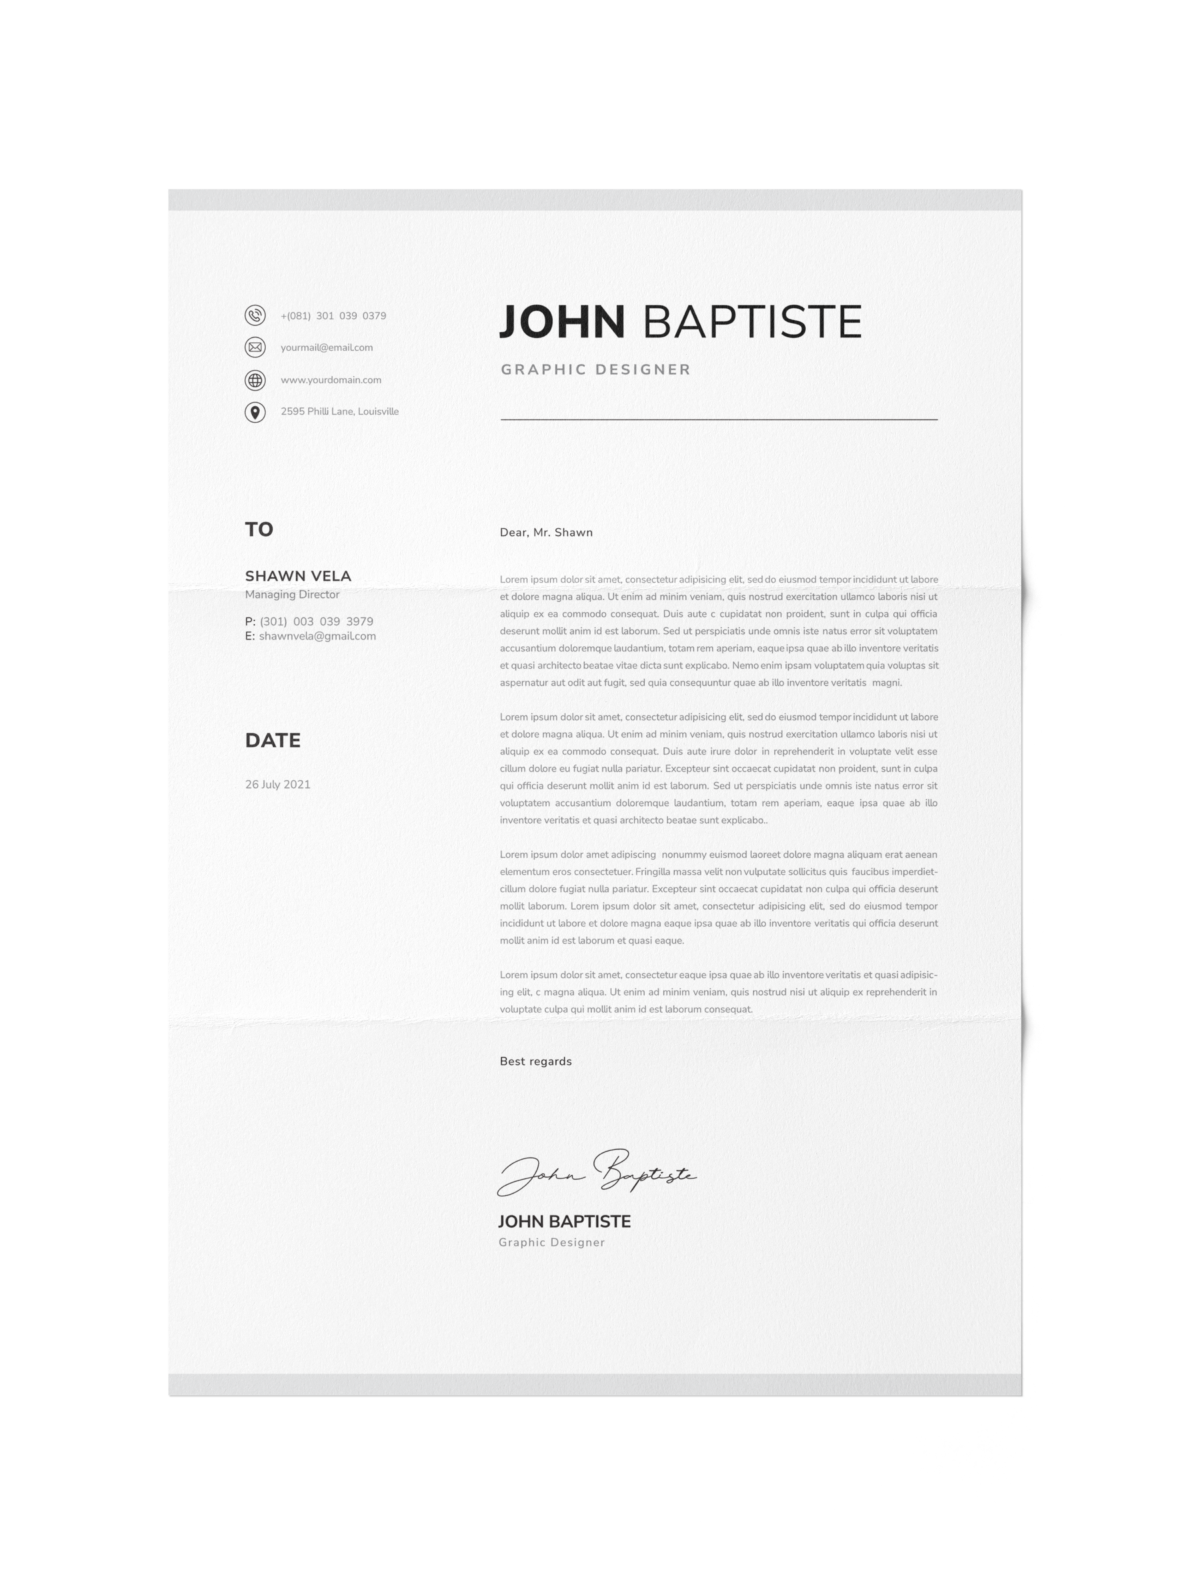 CV #94 John Baptiste